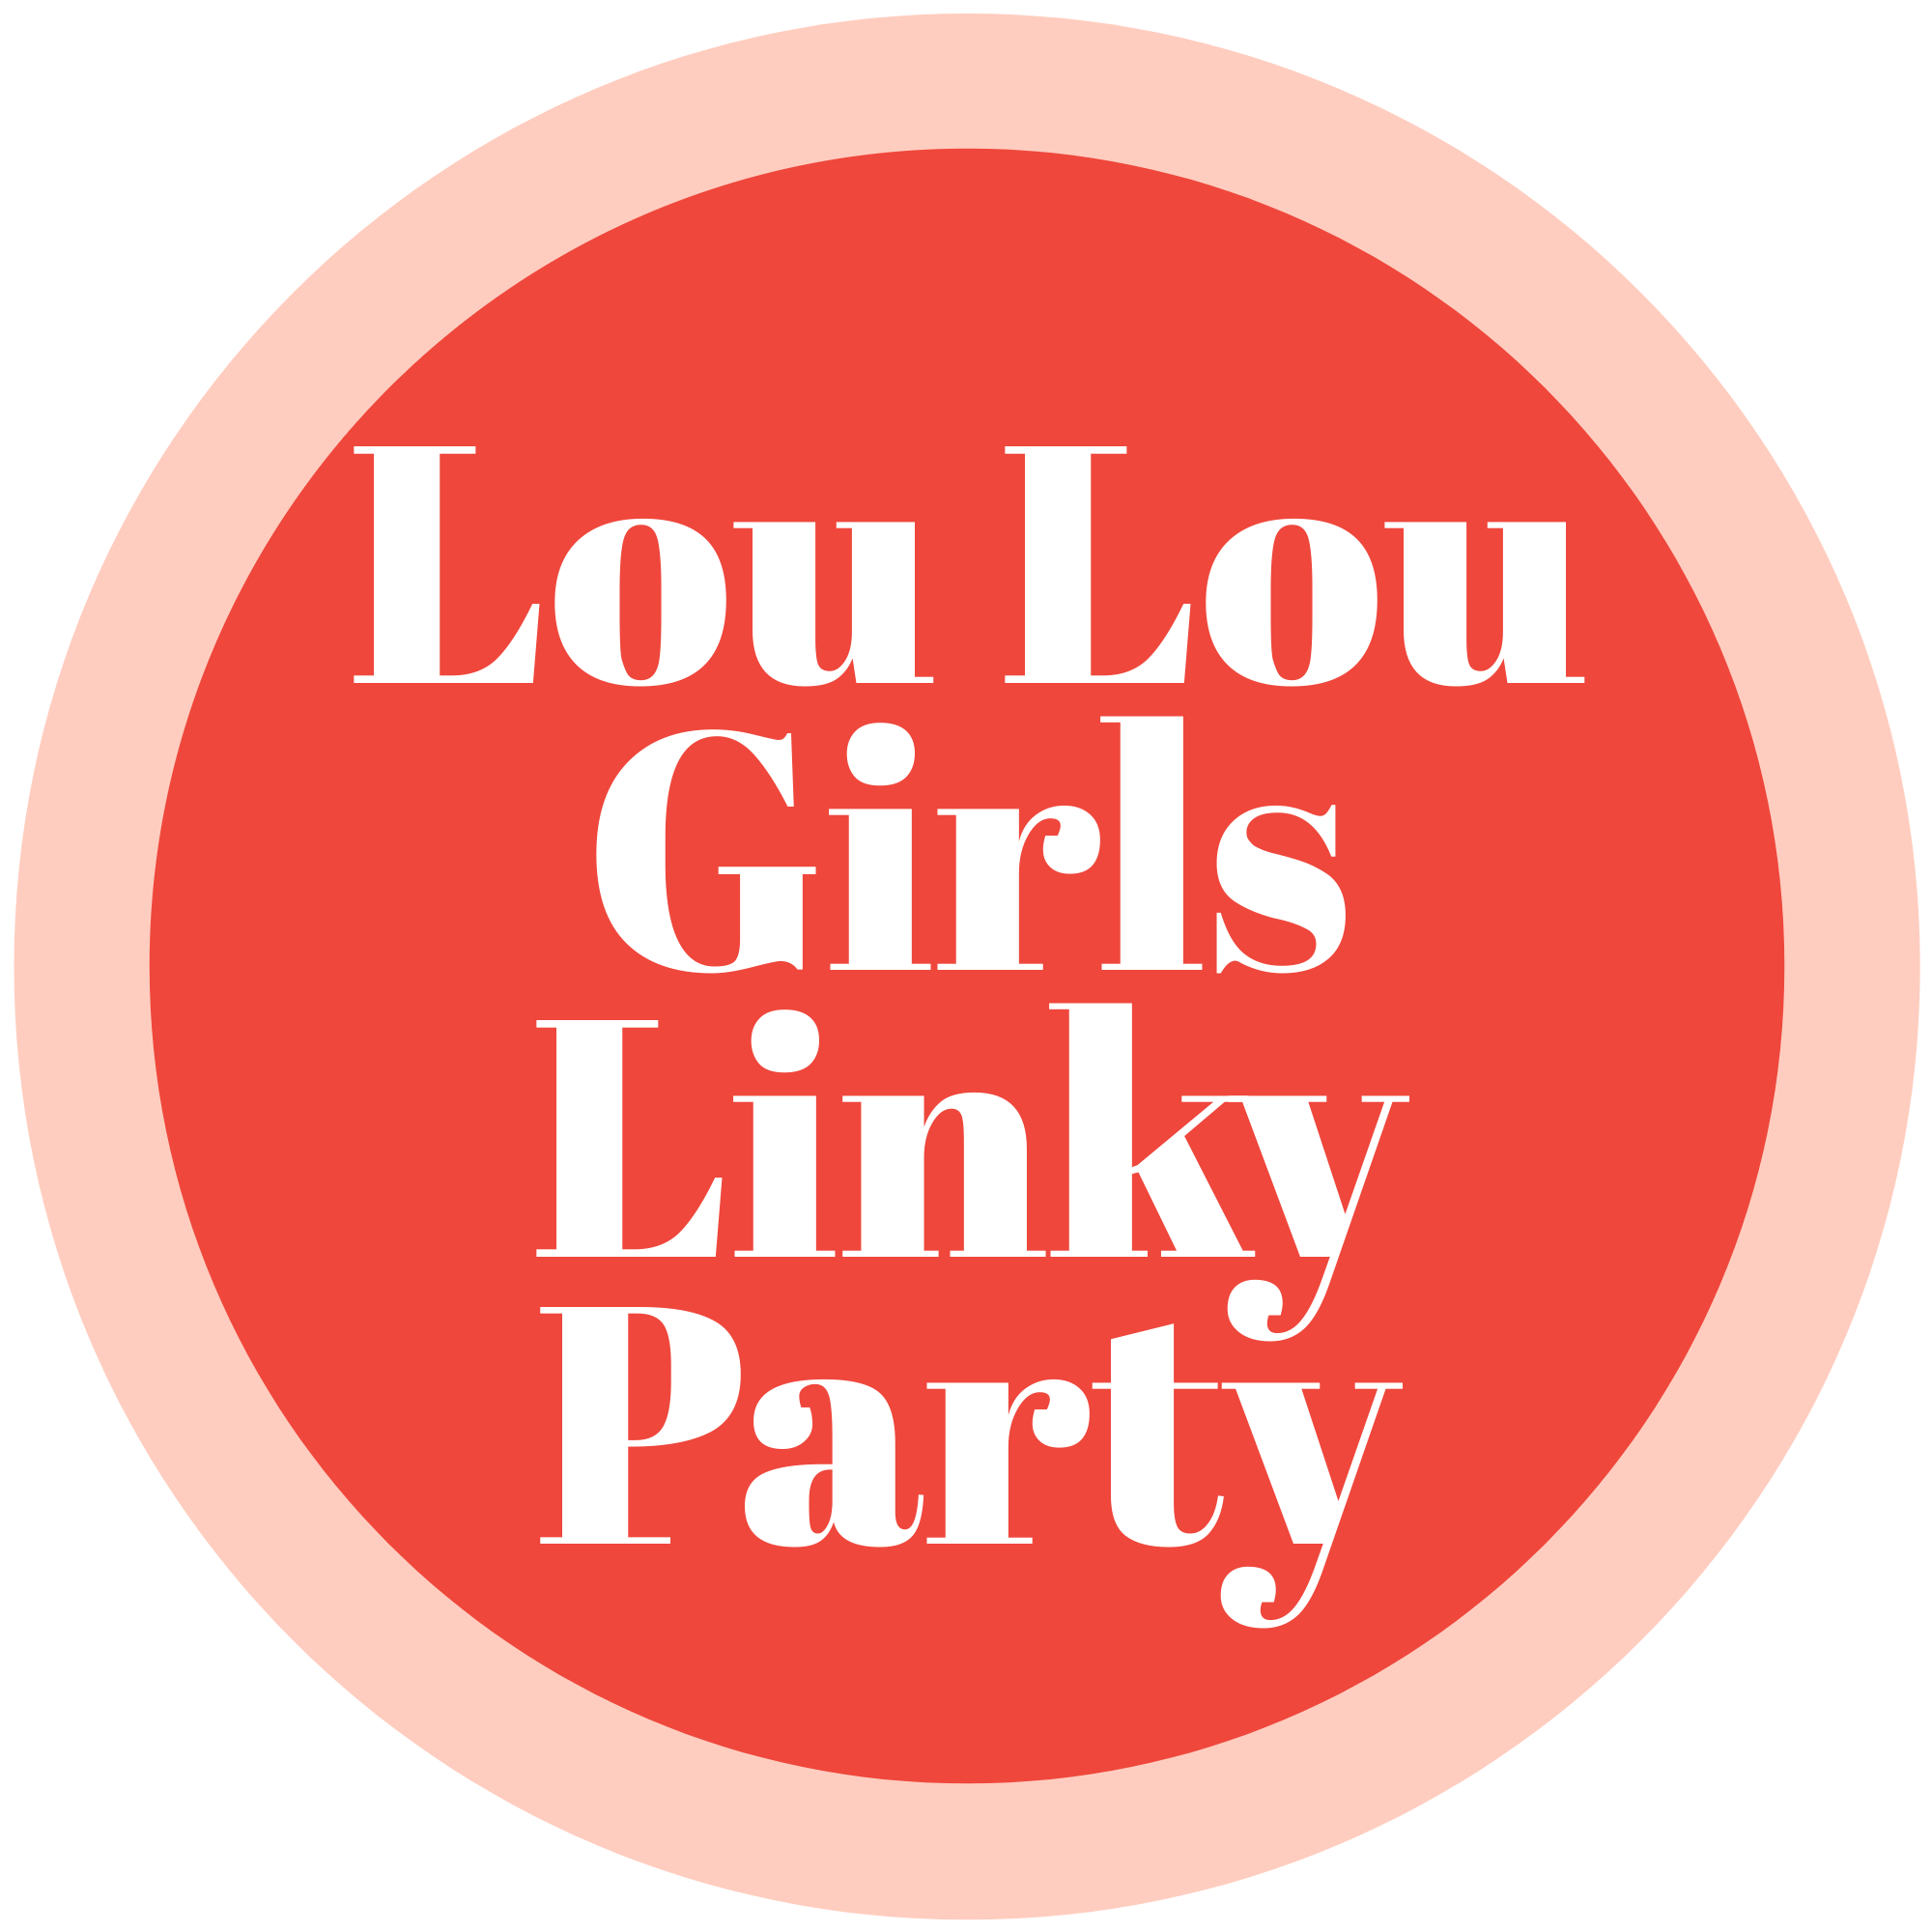 LOU LOU GIRLS FABULOUS PARTY 497